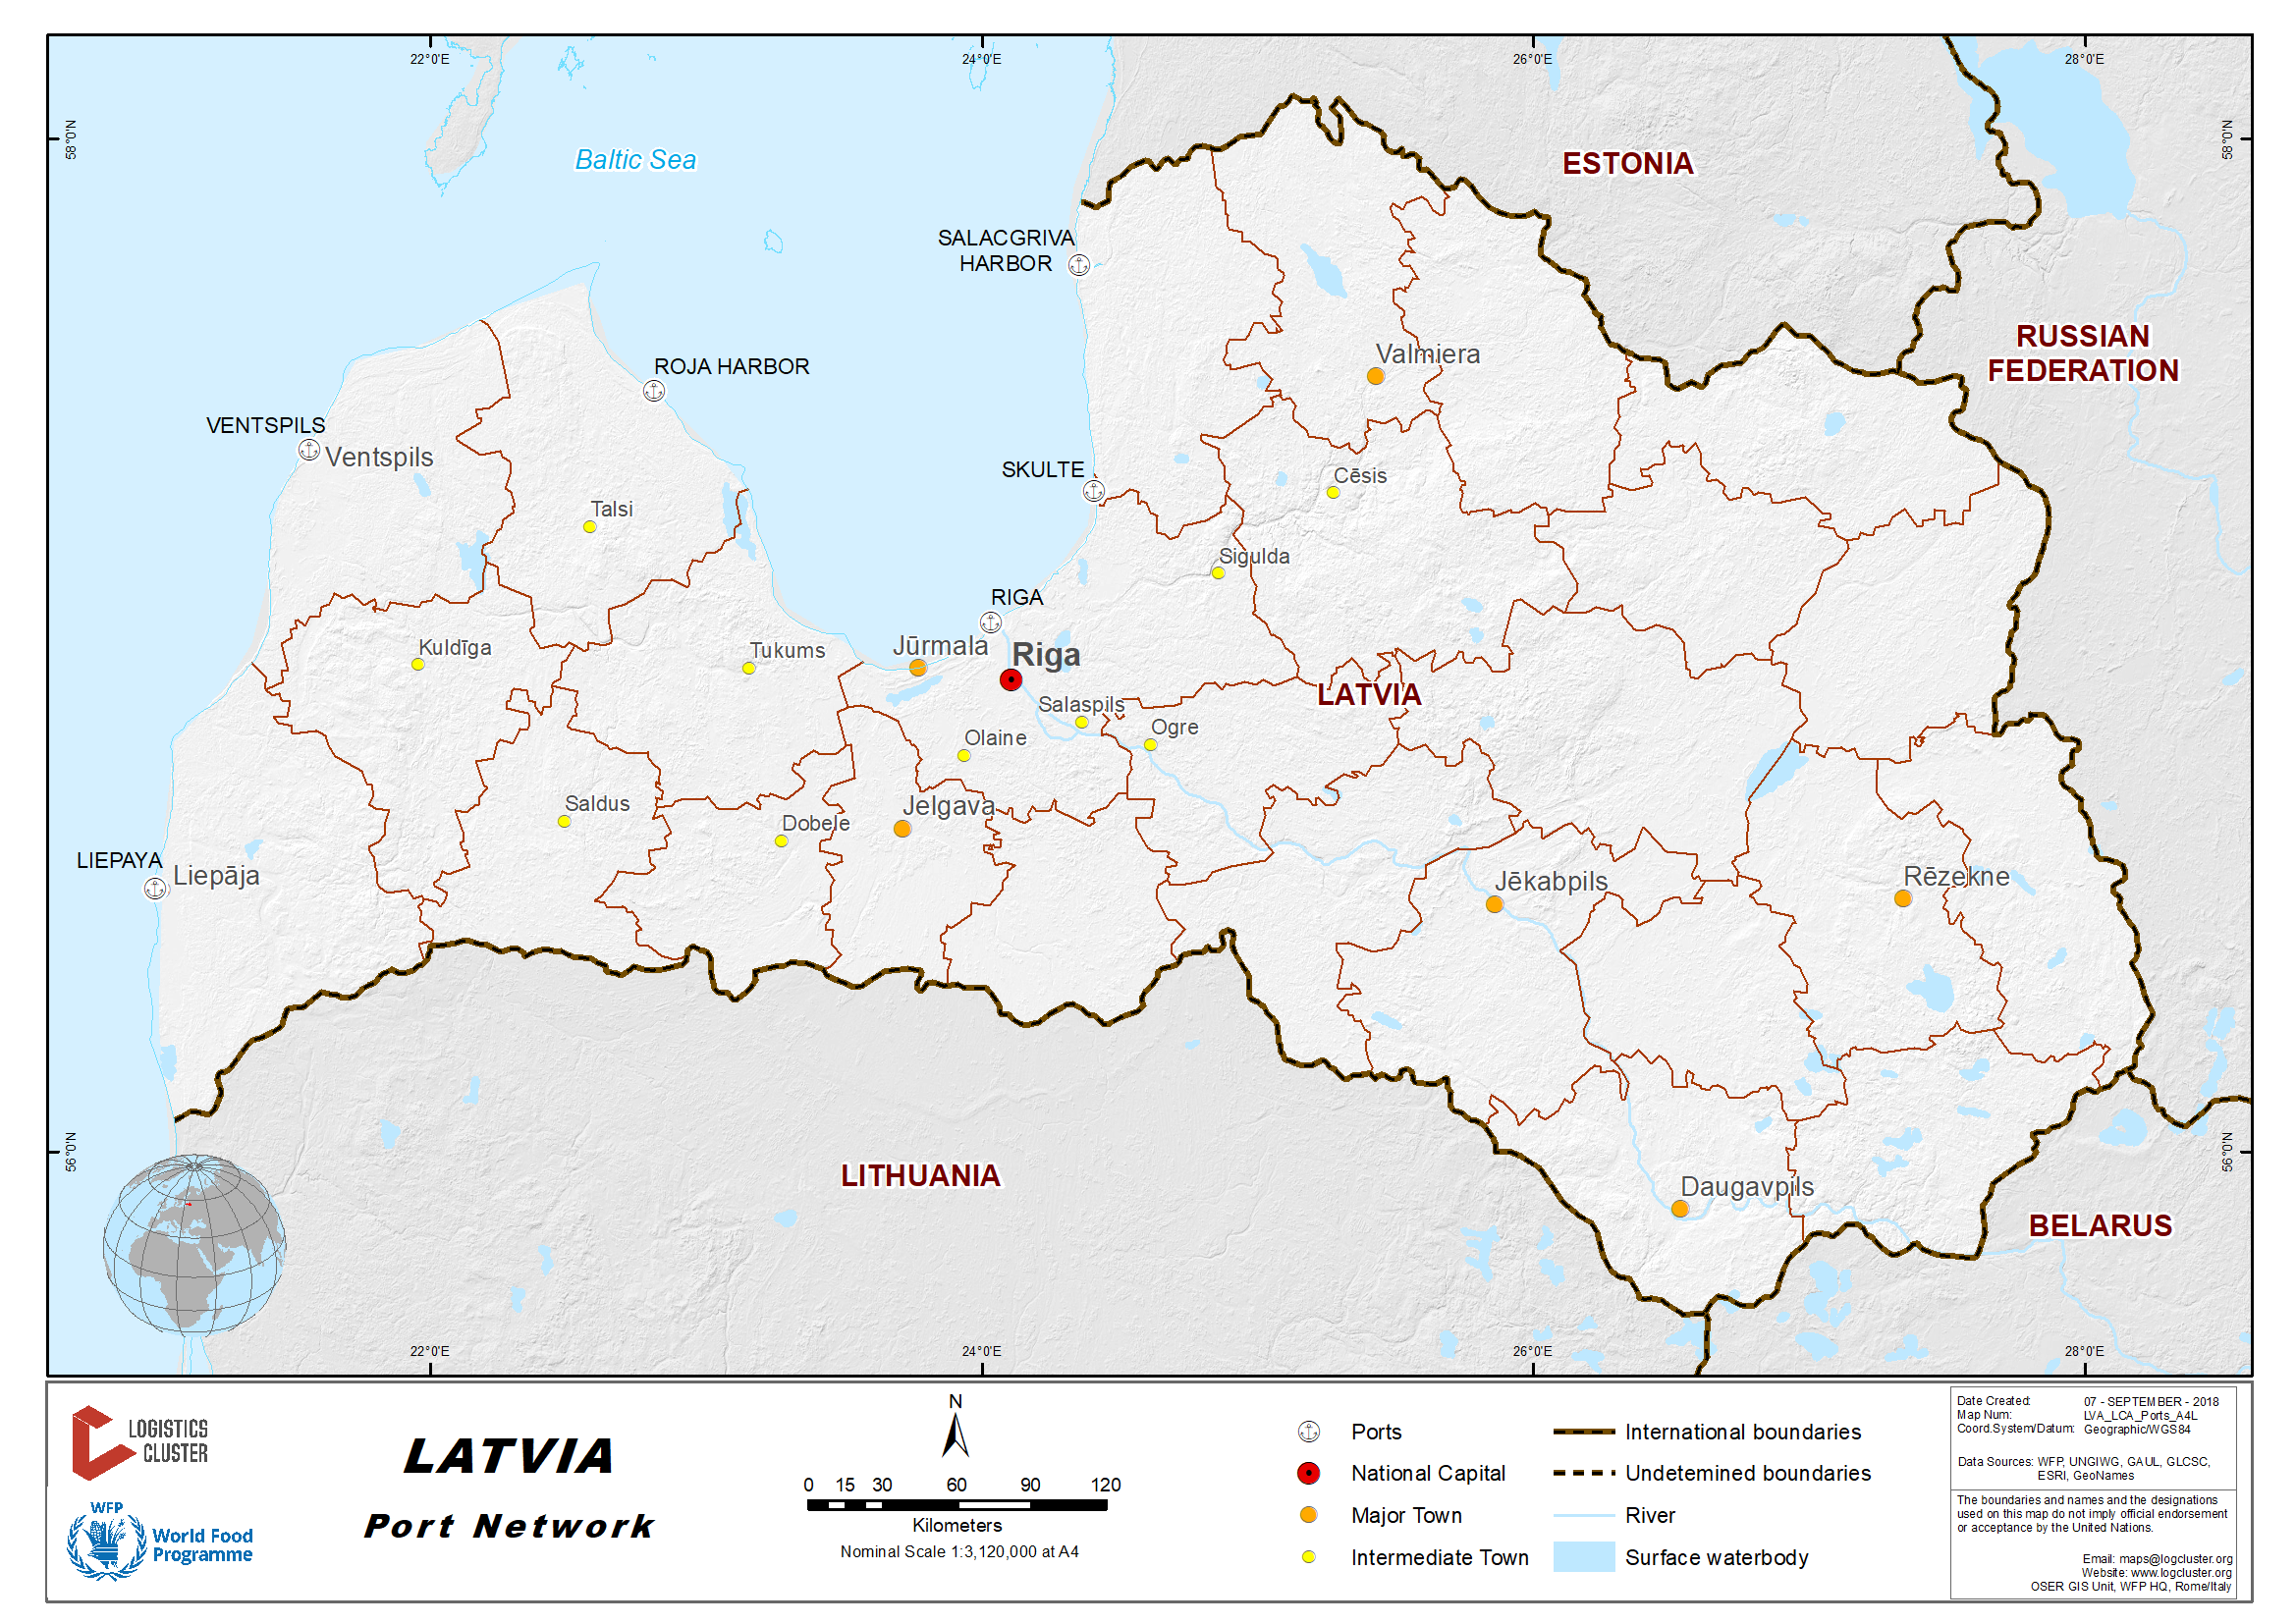 Latvia Ports